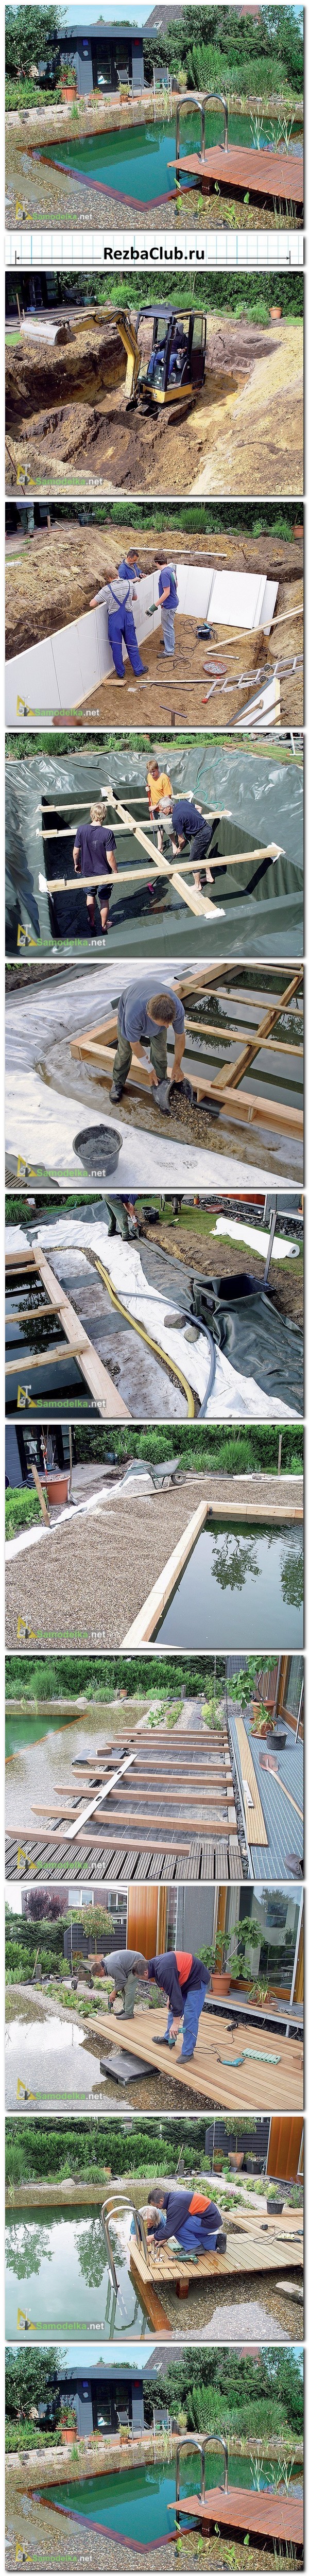 Как построить дачный пруд - бассейн